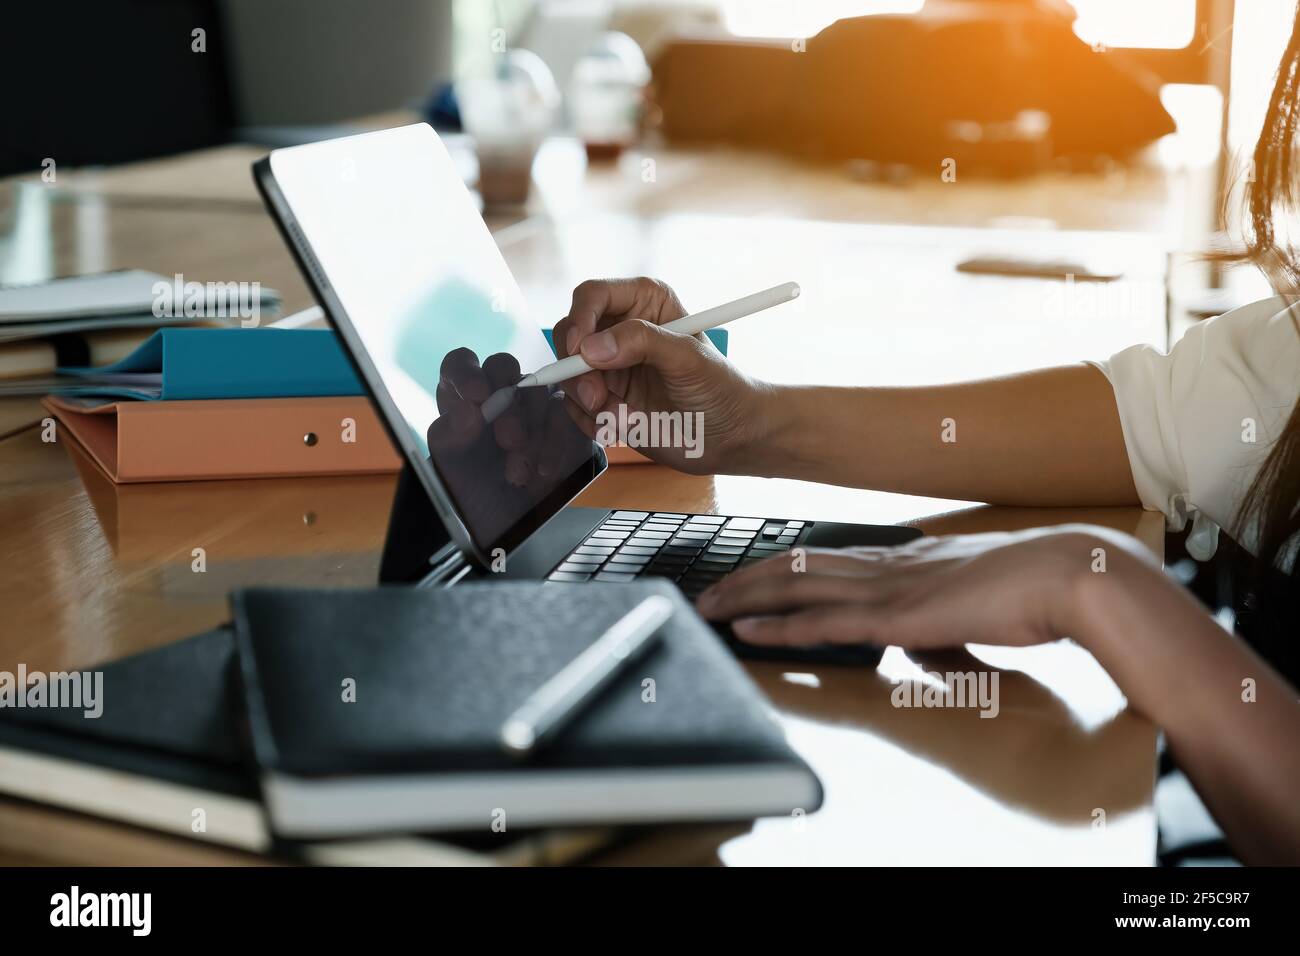 Homme d'affaires utilisant un stylo électronique pendant son travail, homme main utilisant un stylet avec une tablette tout en faisant des calculs financiers à son bureau. Banque D'Images